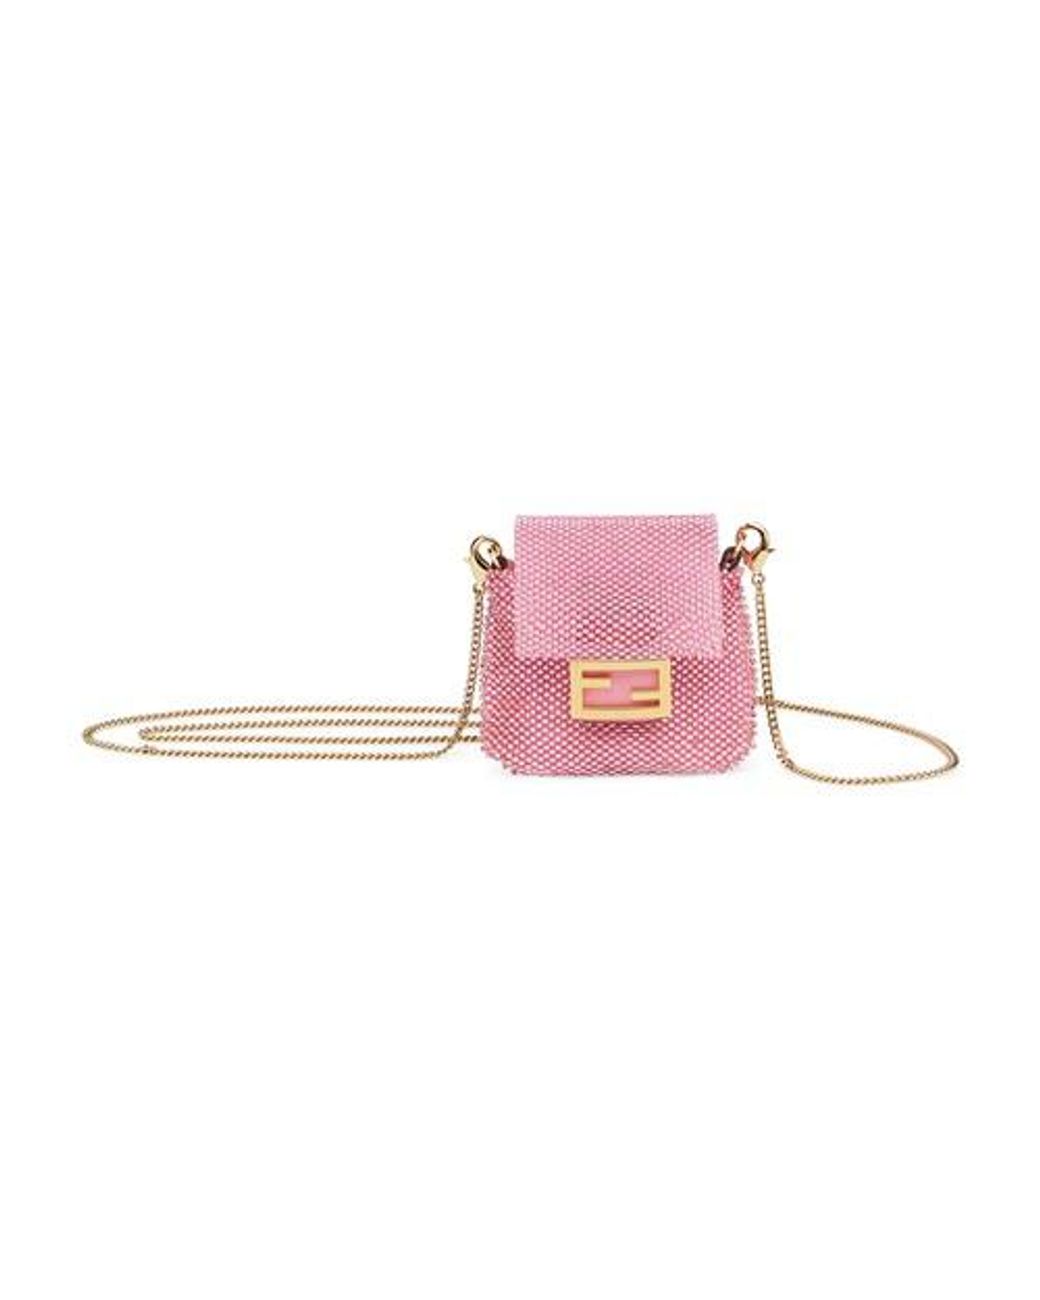 NIB New $1K FENDI Italy 7AR4575PPF078Q Leather Bag Bugs Backpack Charm Key  Chain | eBay